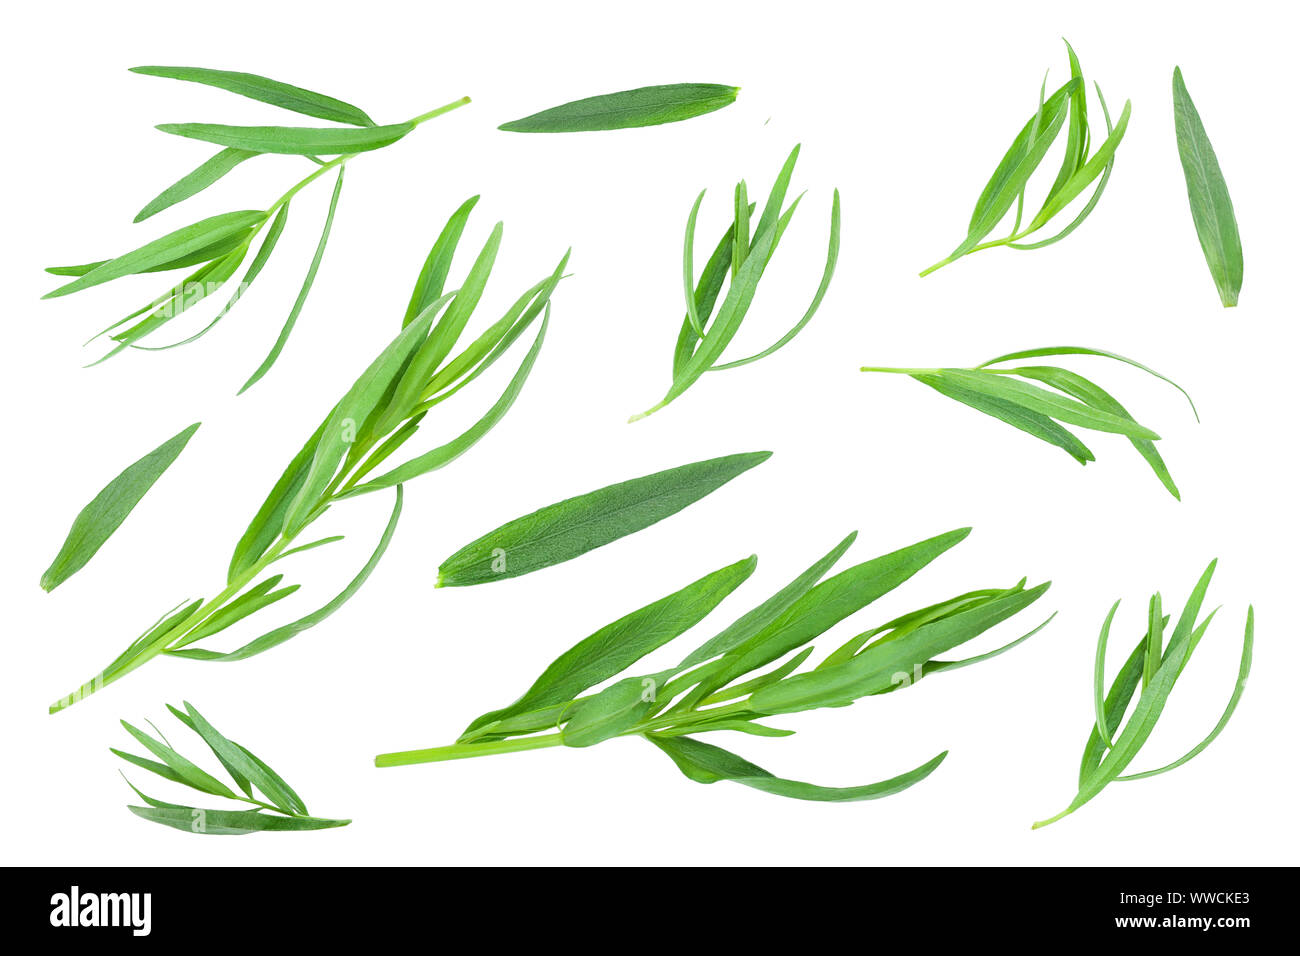 Estragon oder Estragon auf einem weißen Hintergrund. Artemisia dracunculus. Ansicht von oben. Flach. Stockfoto